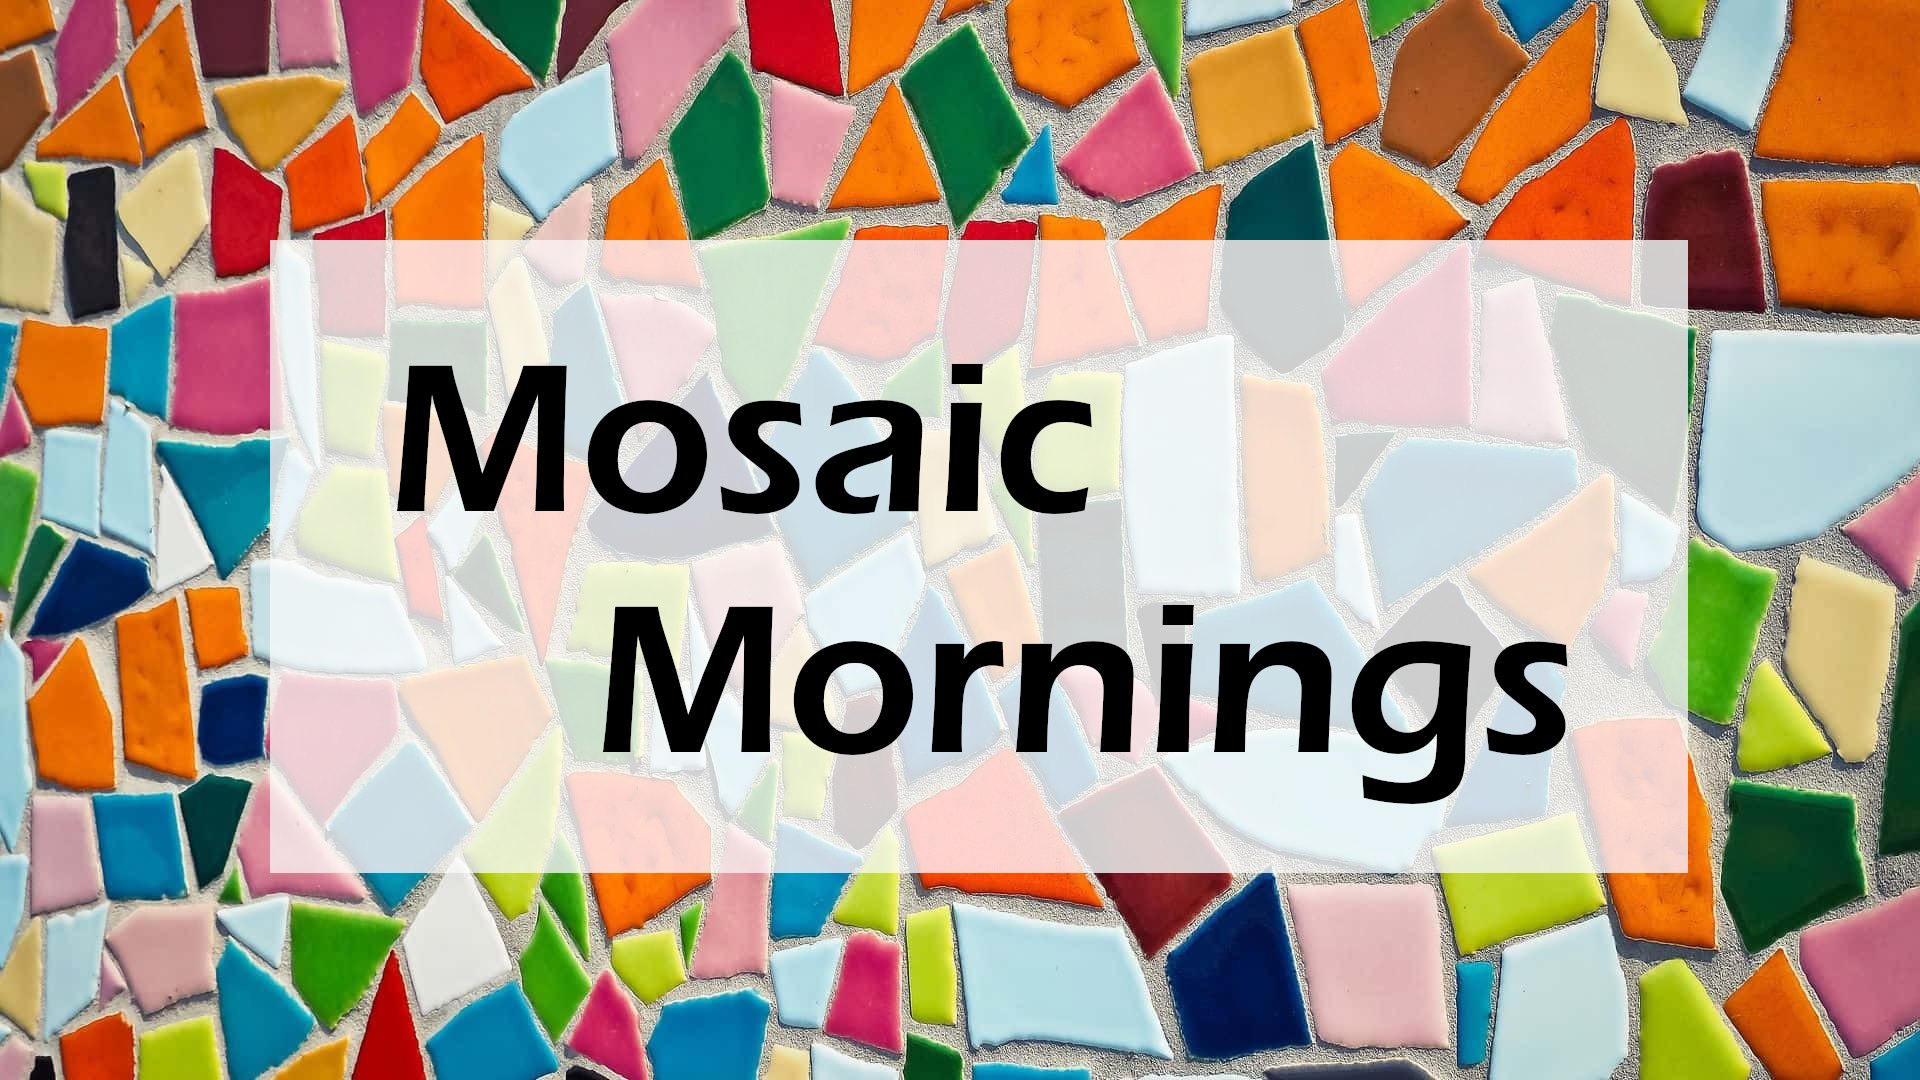 Mosaic Mornings